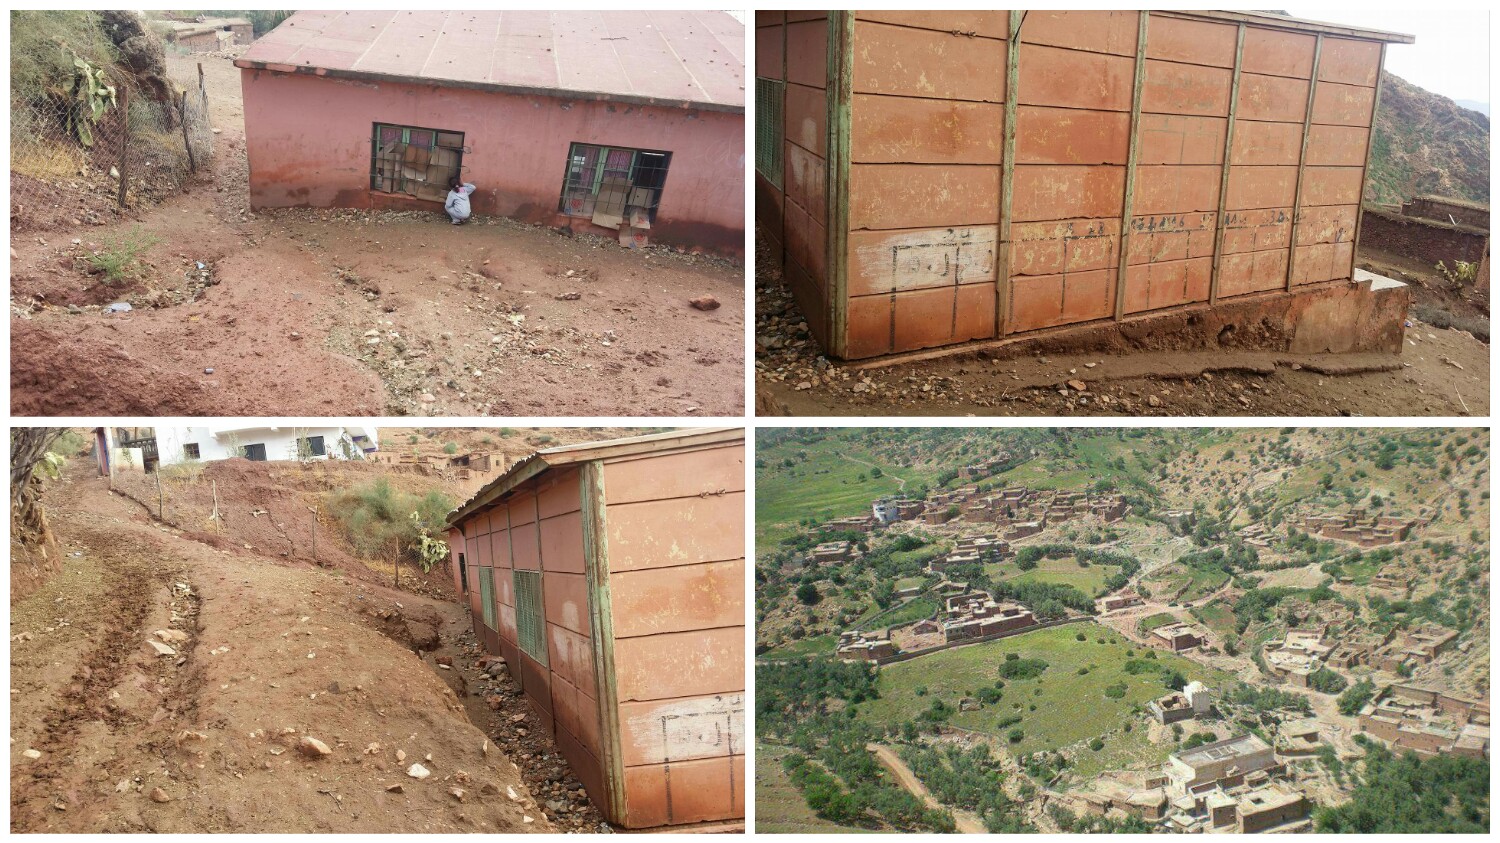 بالصور والواقع المر… ساكنة بأعالي جبال أزيلال تستنجد بالمسؤولين لتزويدهم بالماء وإصلاح مدرسة مهترئة